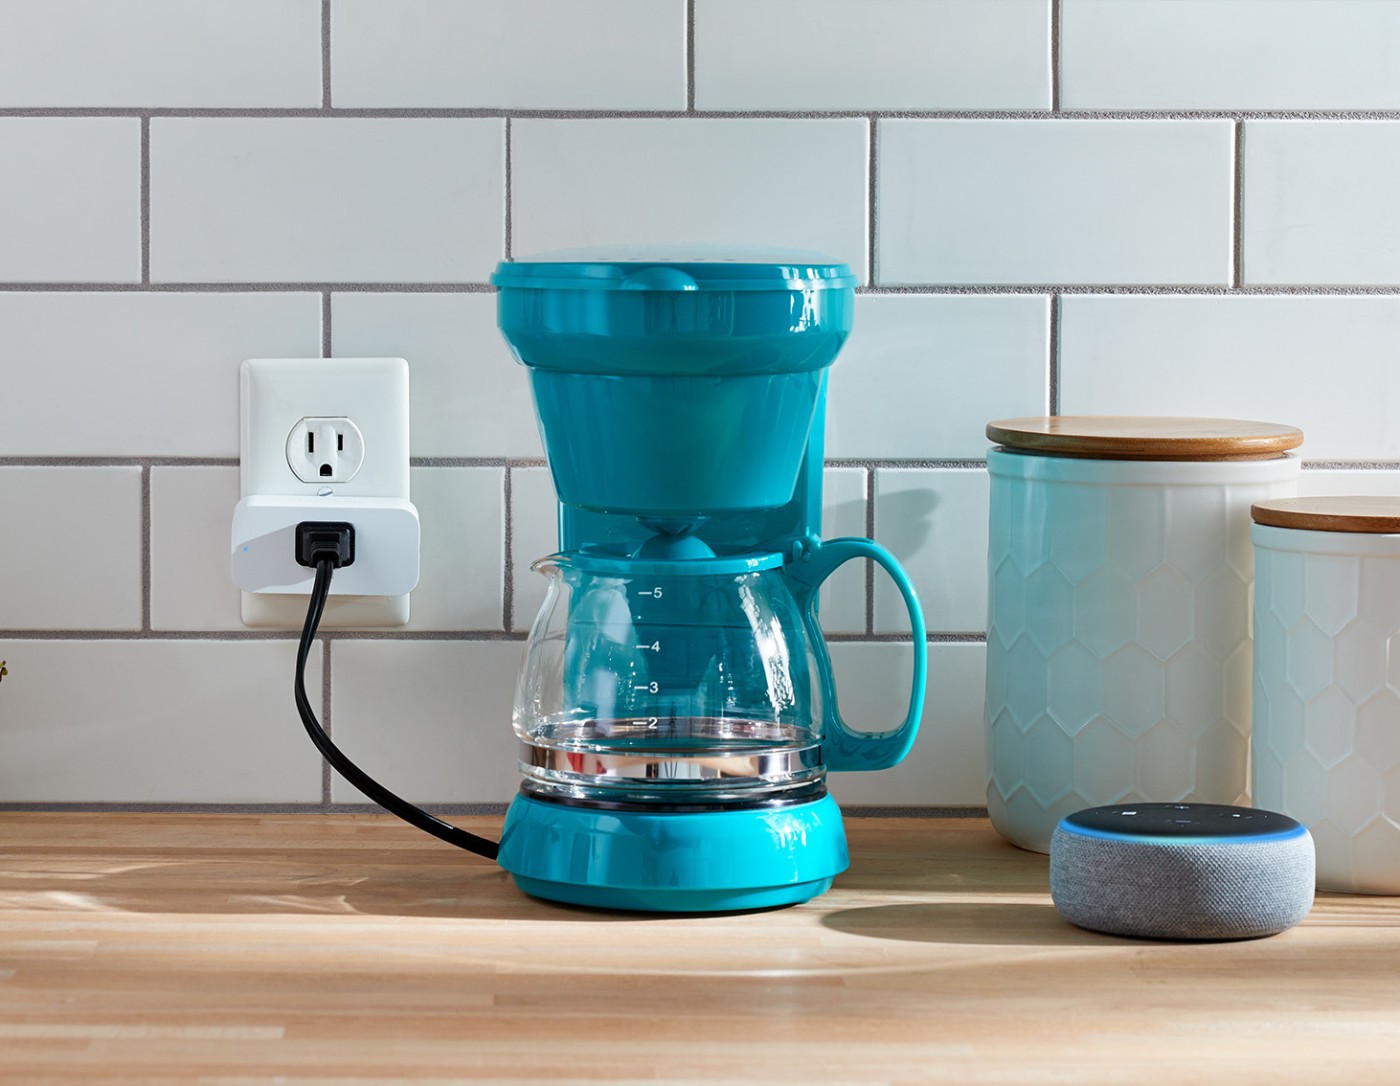 Cafeteira conectada ao Amazon Smart Plug em um balcão de cozinha.